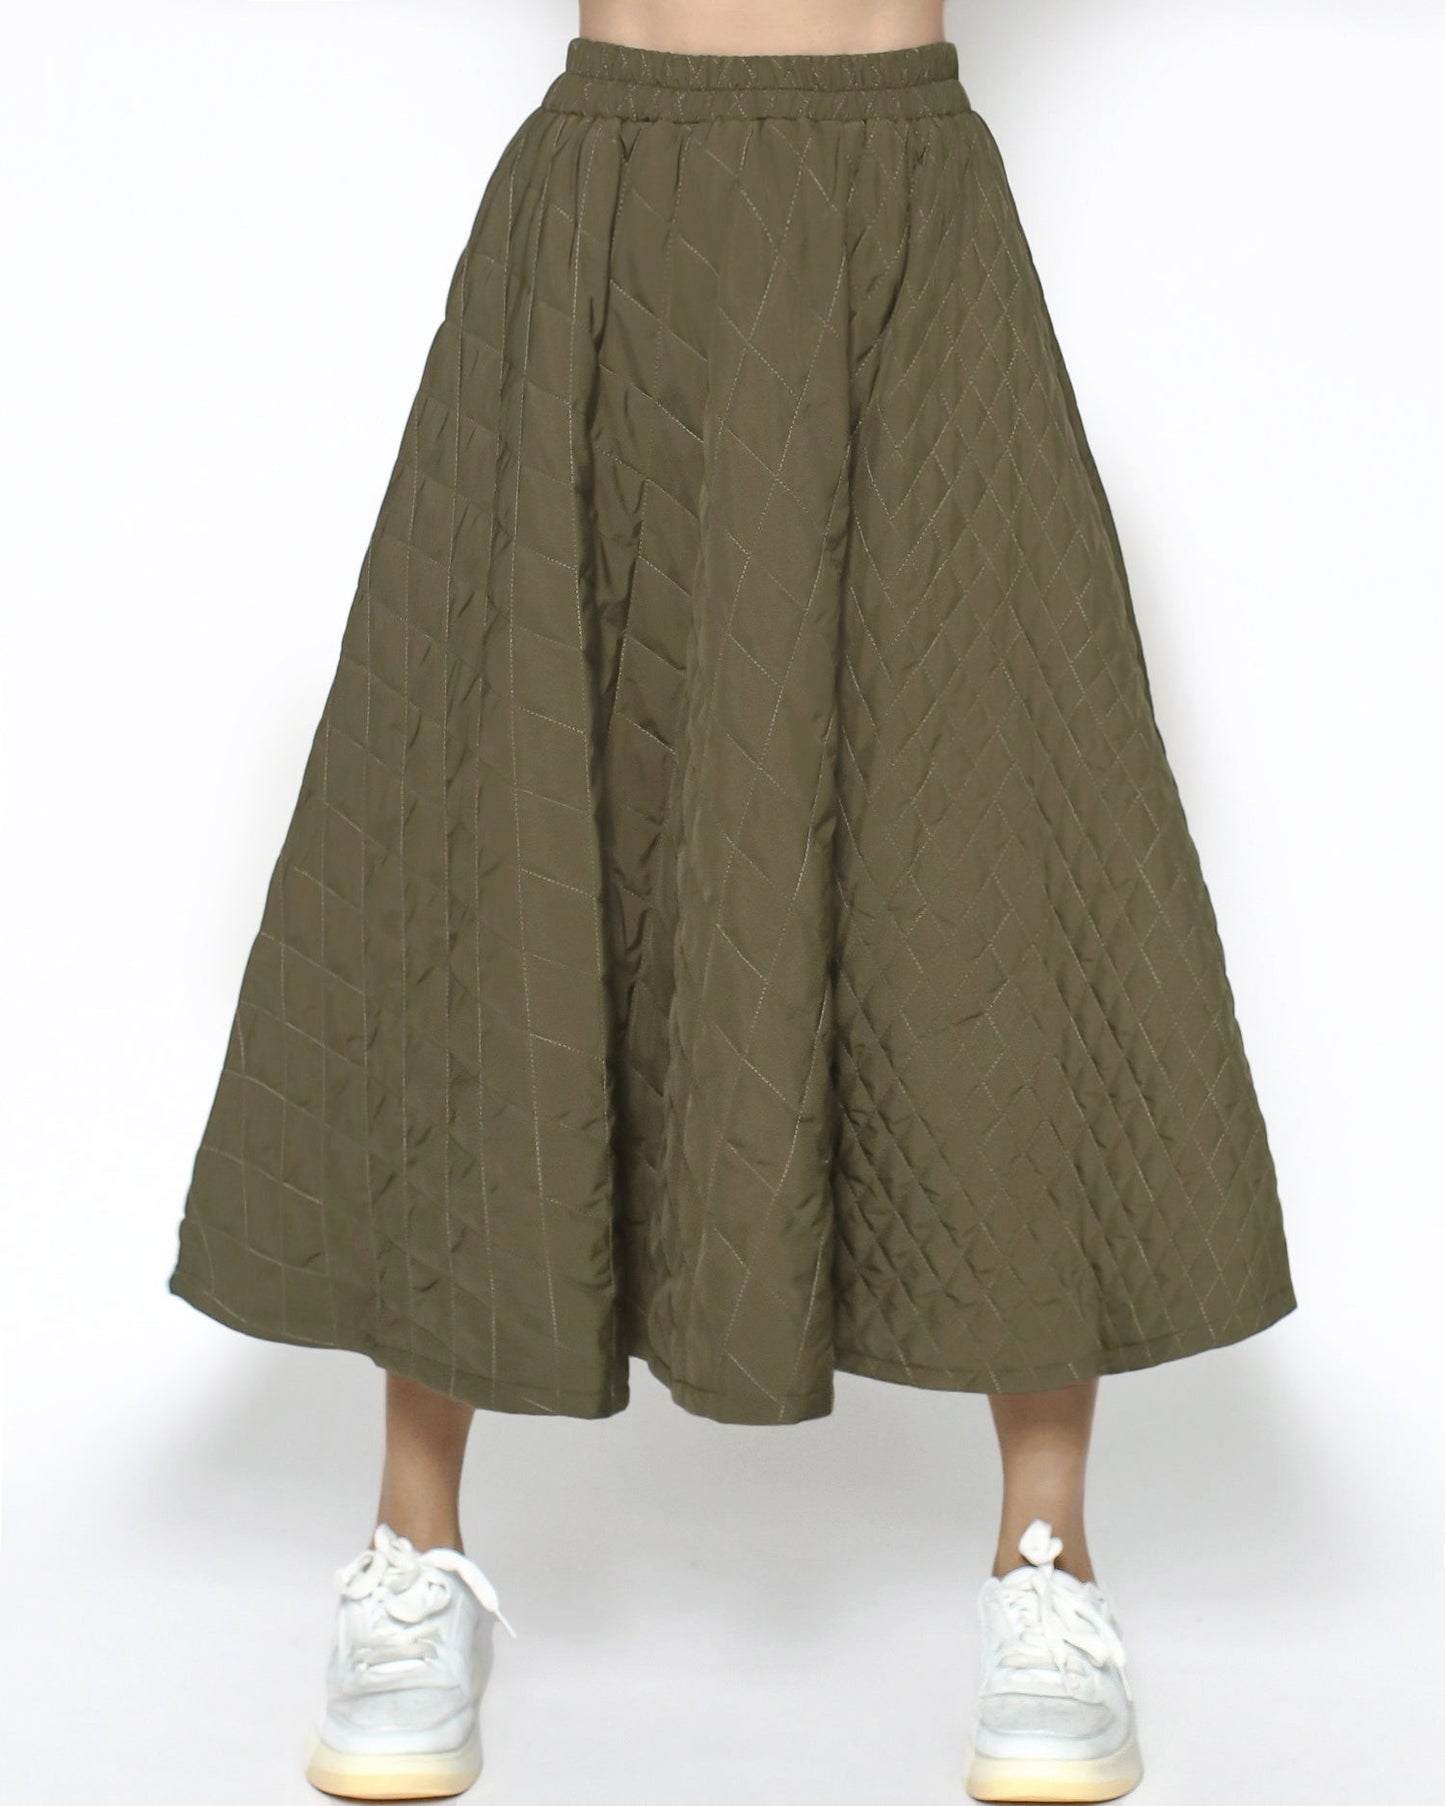 綠色絎縫喇叭裙 *預購*